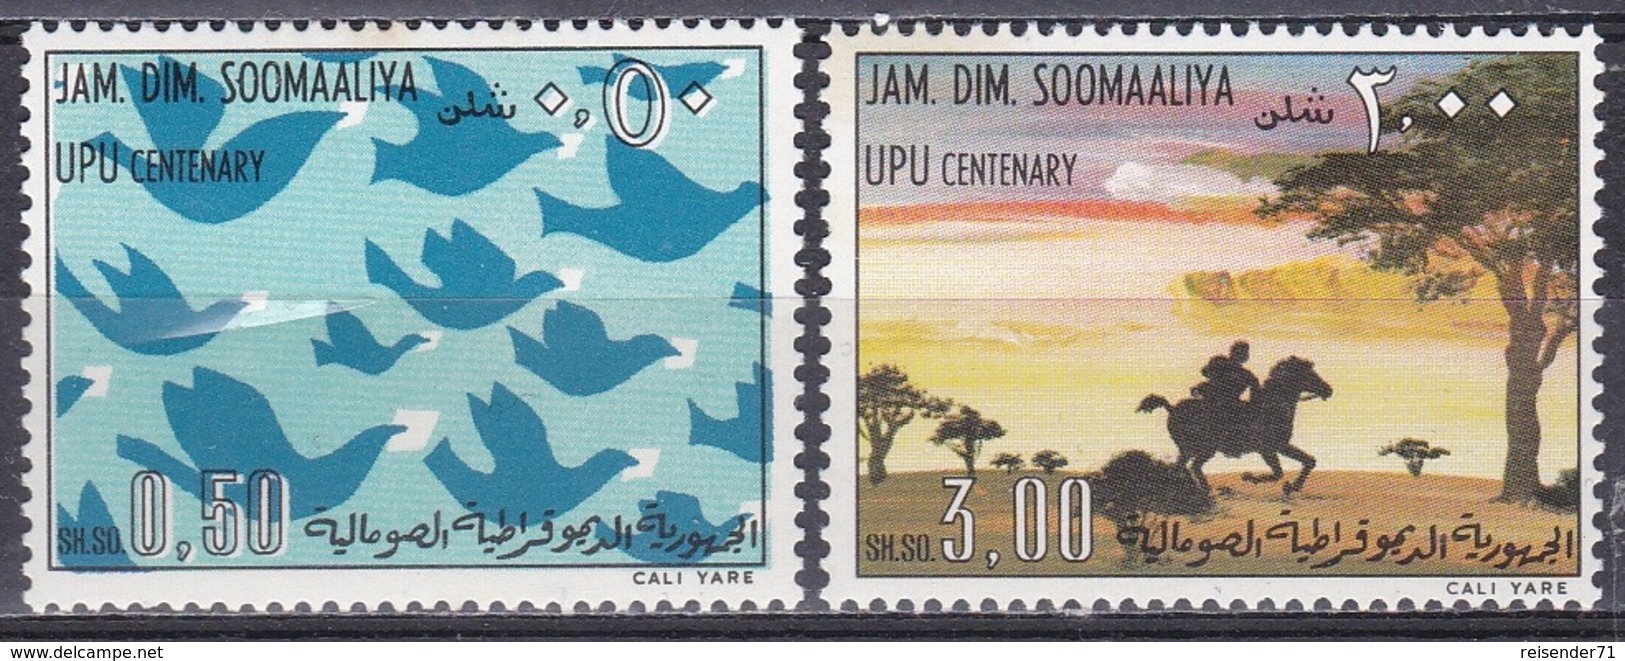 Somalia 1975 Organisationen UNO ONU Postwesen Weltpostverein UPU Brieftauben Tauben Doves Postreiter, Mi. 217-8 ** - Somalia (1960-...)